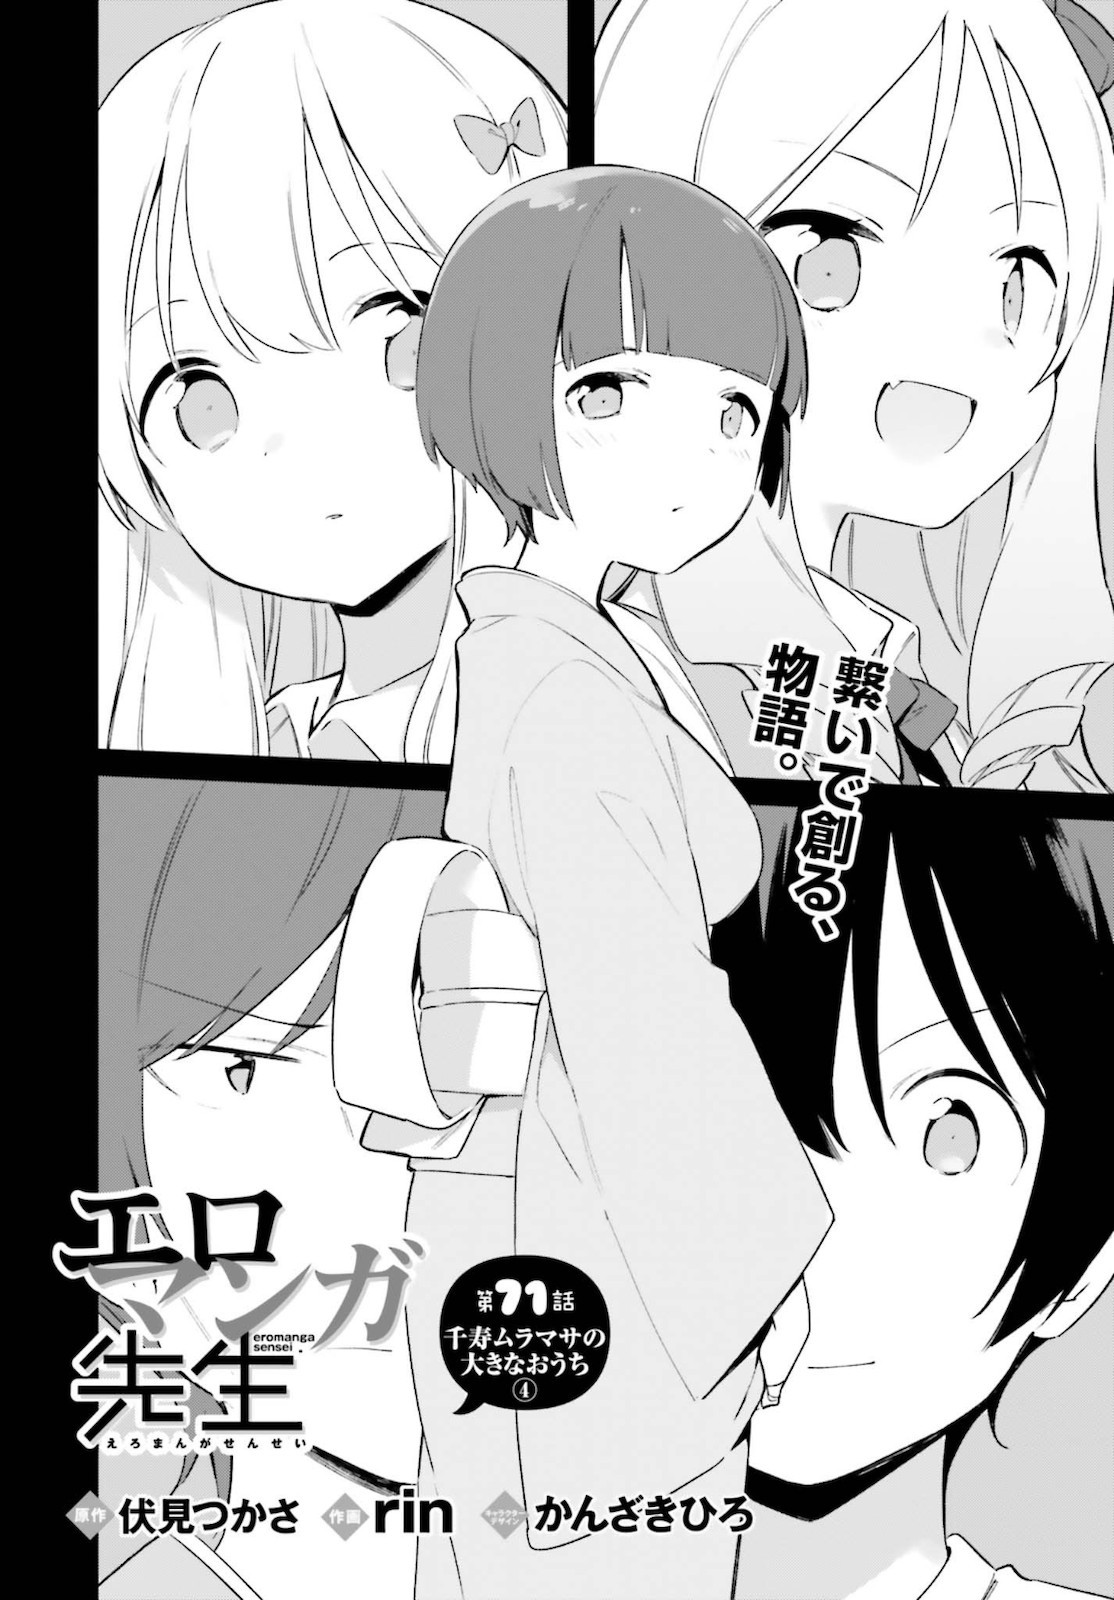 Ero Manga Sensei - Chapter 71 - Page 2